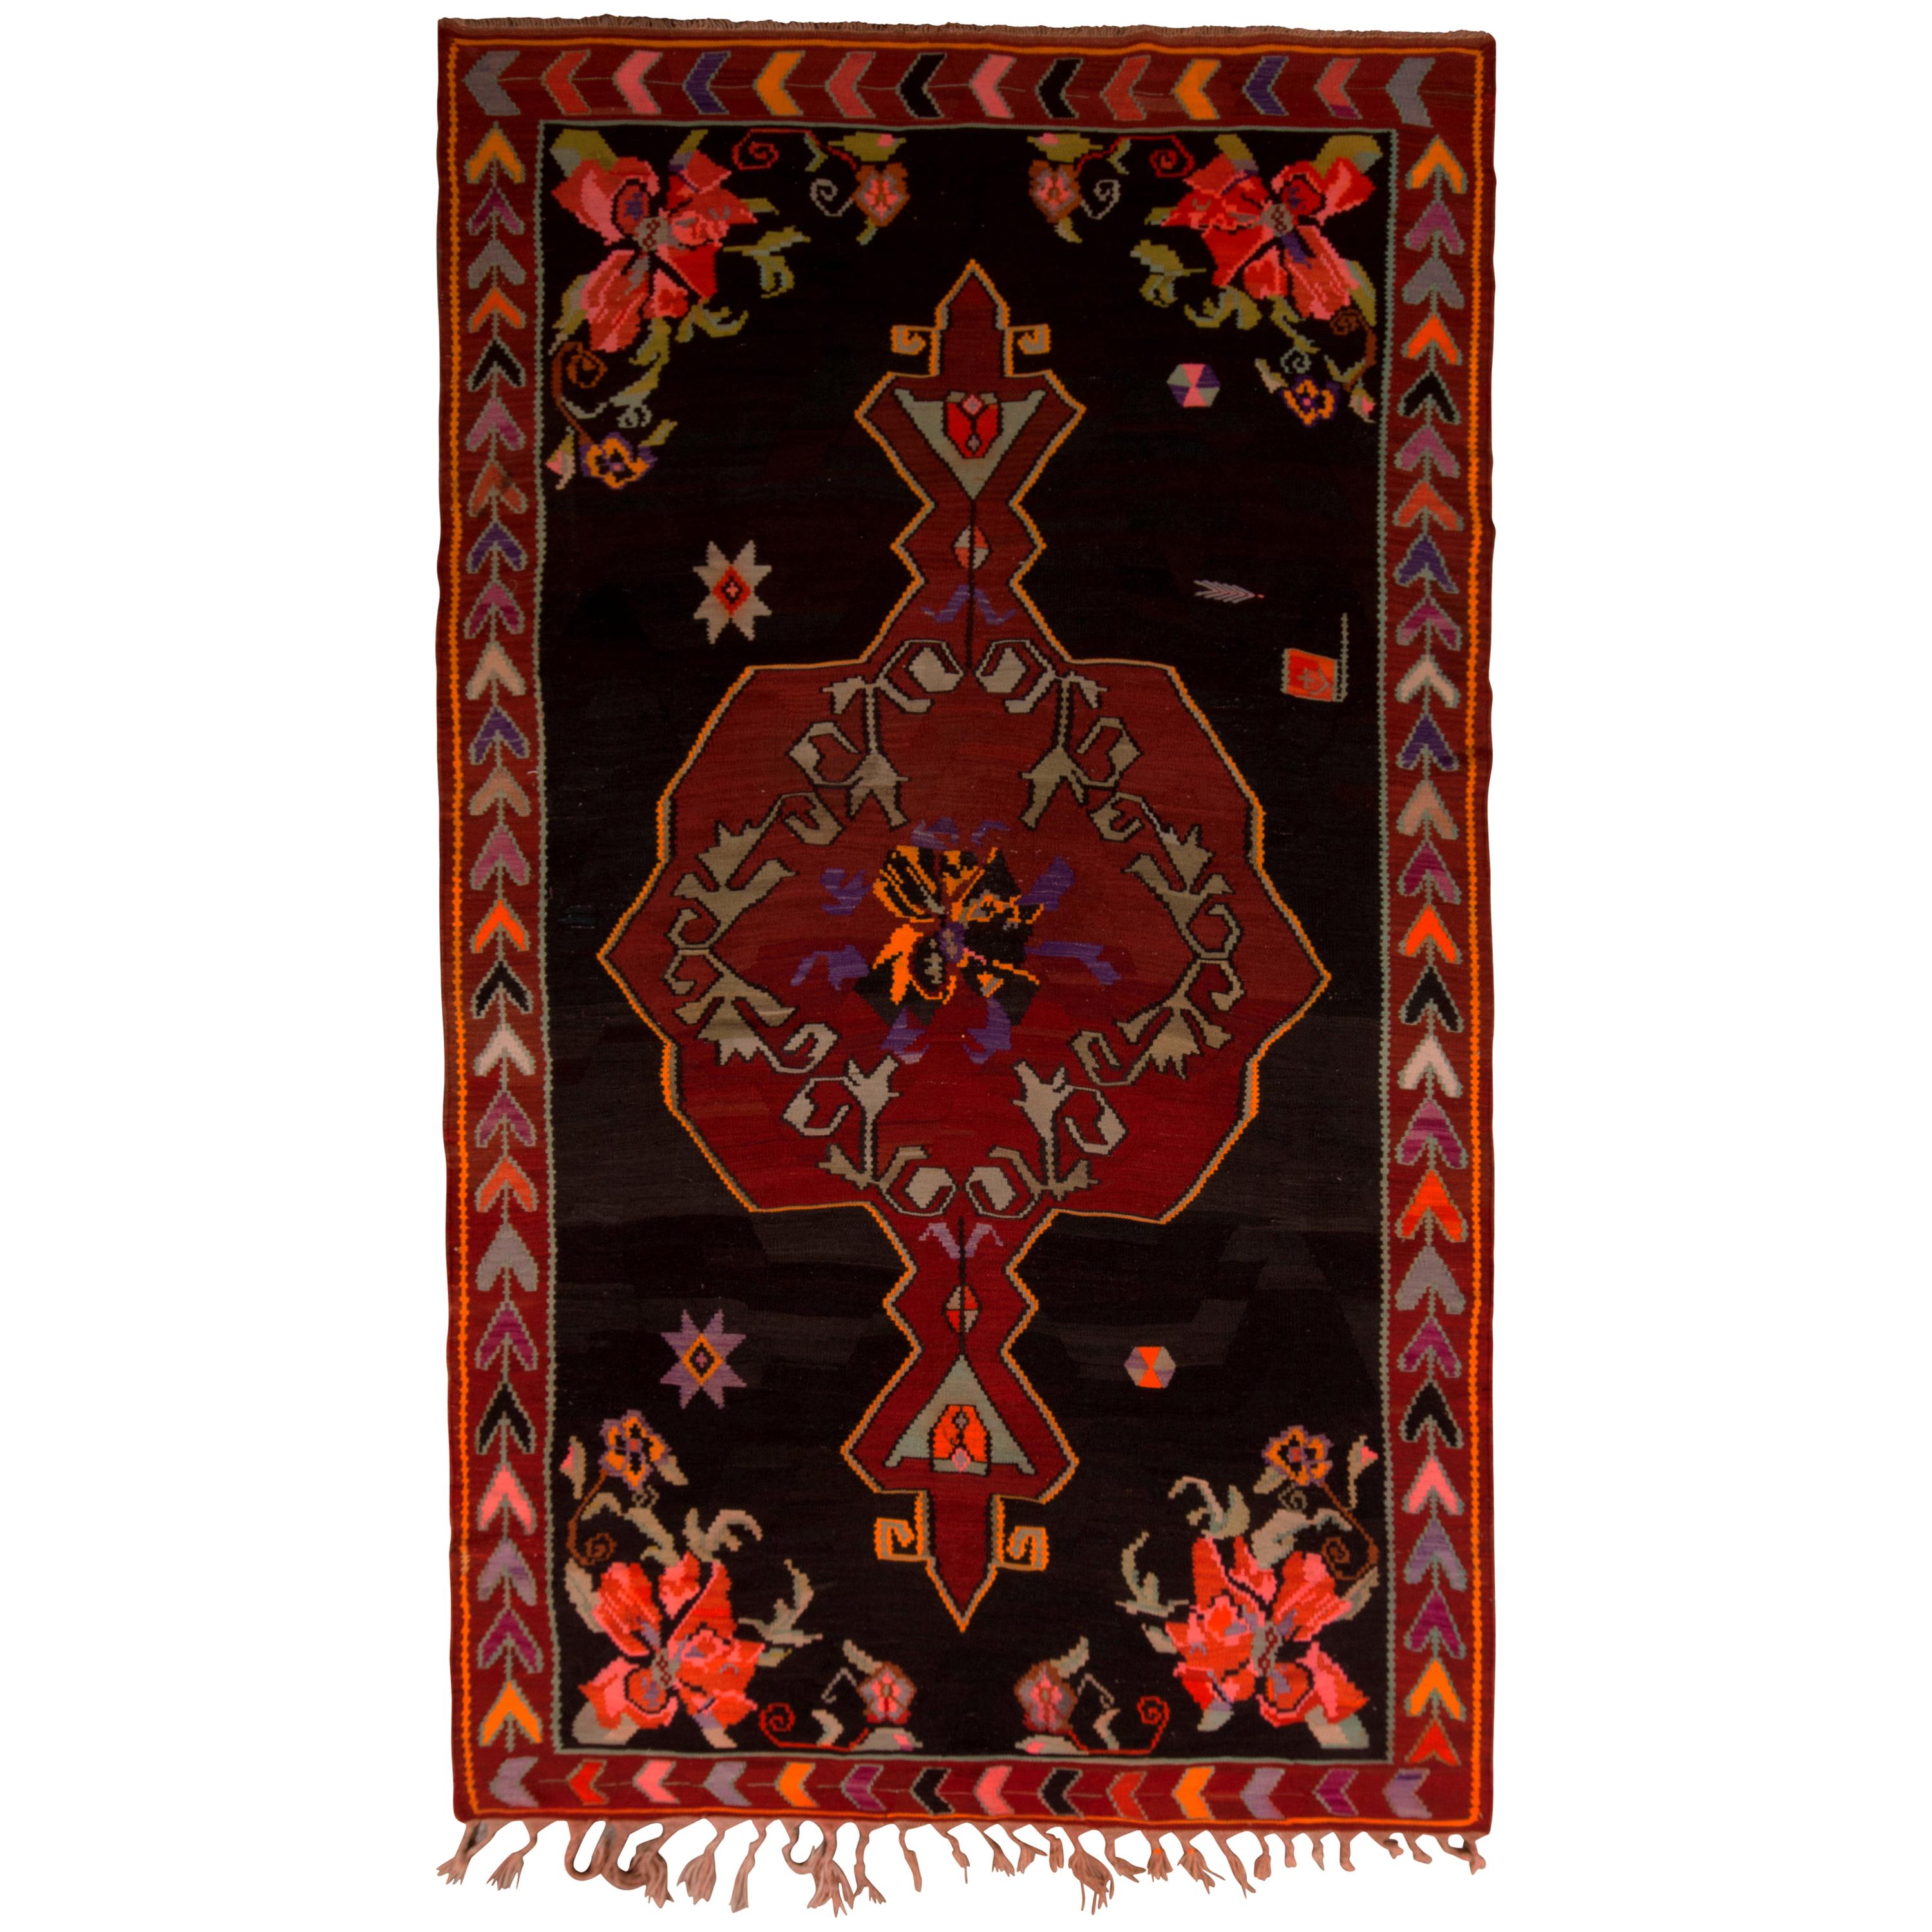 Midcentury Kilim Rug Black Red Floral Turkish Wool Flat-Weave by Rug & Kilim